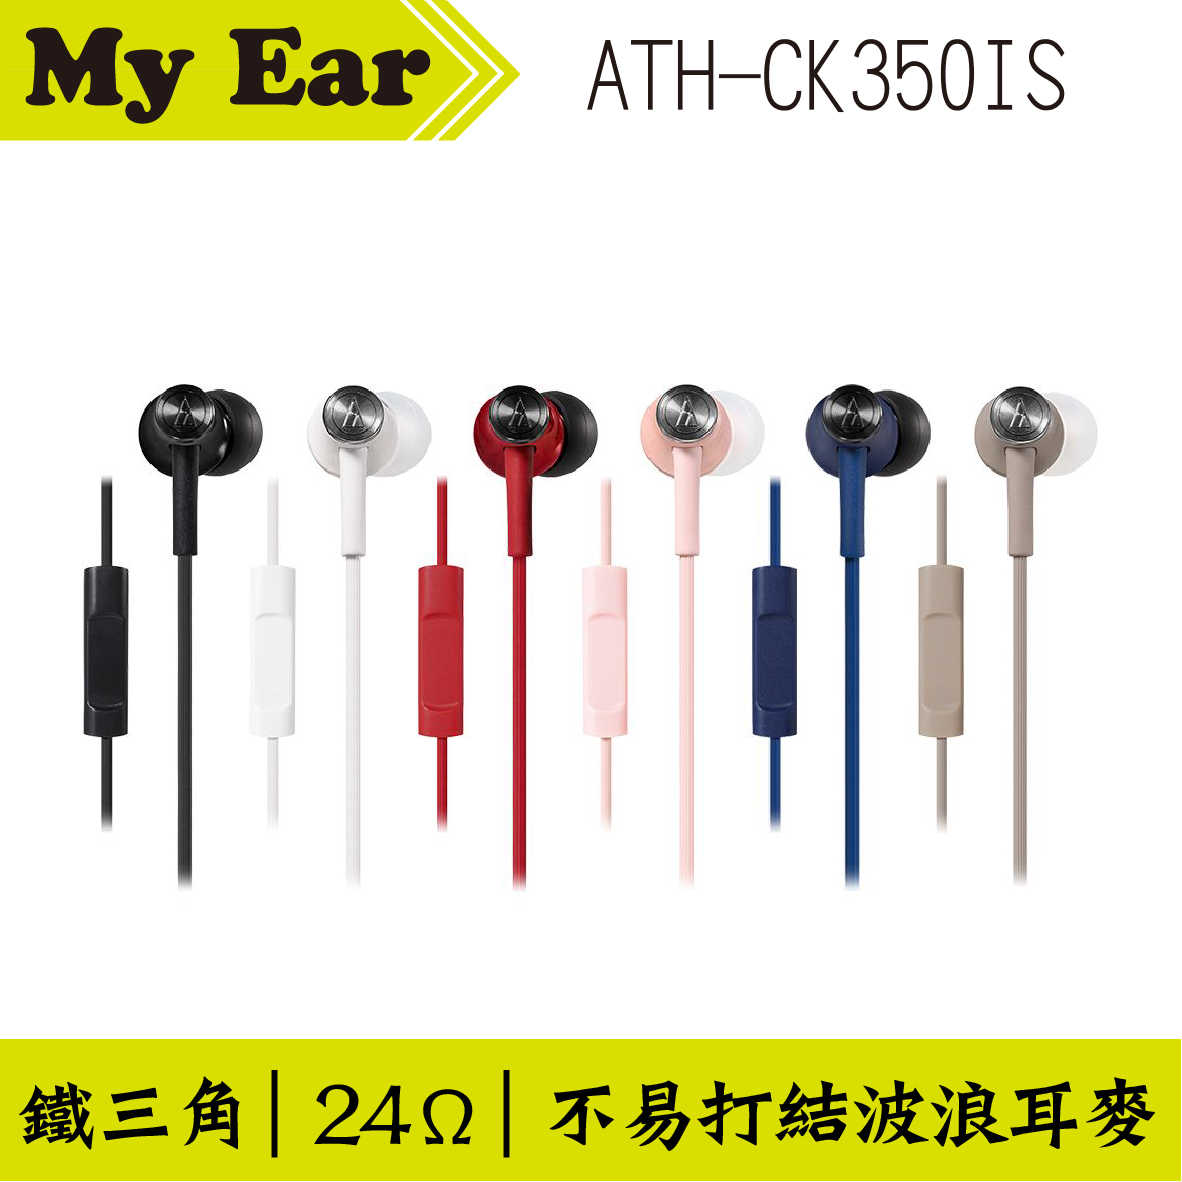 鐵三角 ATH-CK350IS 耳機麥克風 粉紅色  | My Ear 耳機專門店